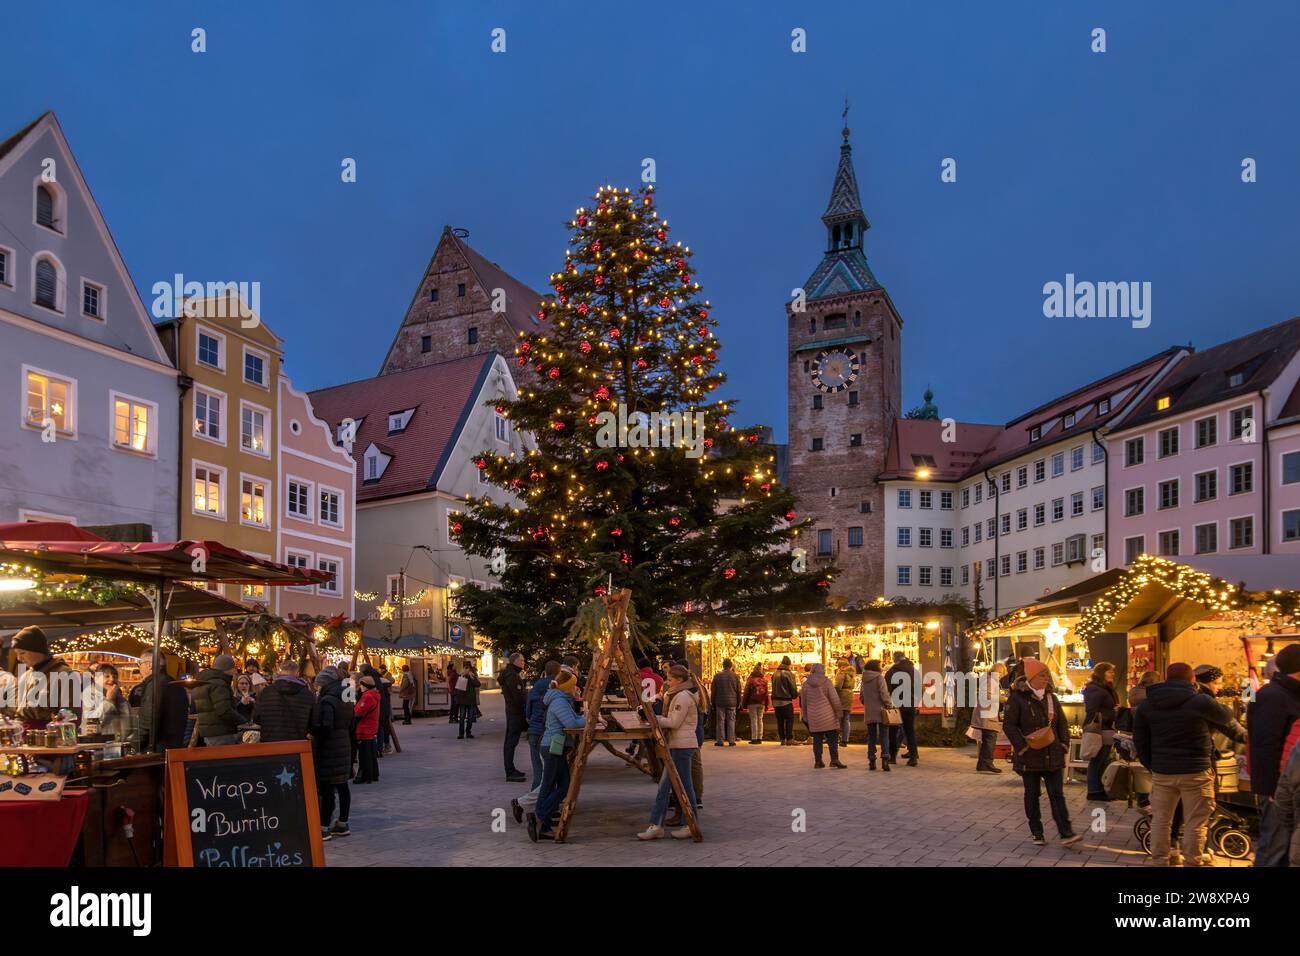 Weihnachtsmarkt am Abend auf dem Hauptplatz in Landsberg am Lech, Bayern, Deutschland Stockfoto